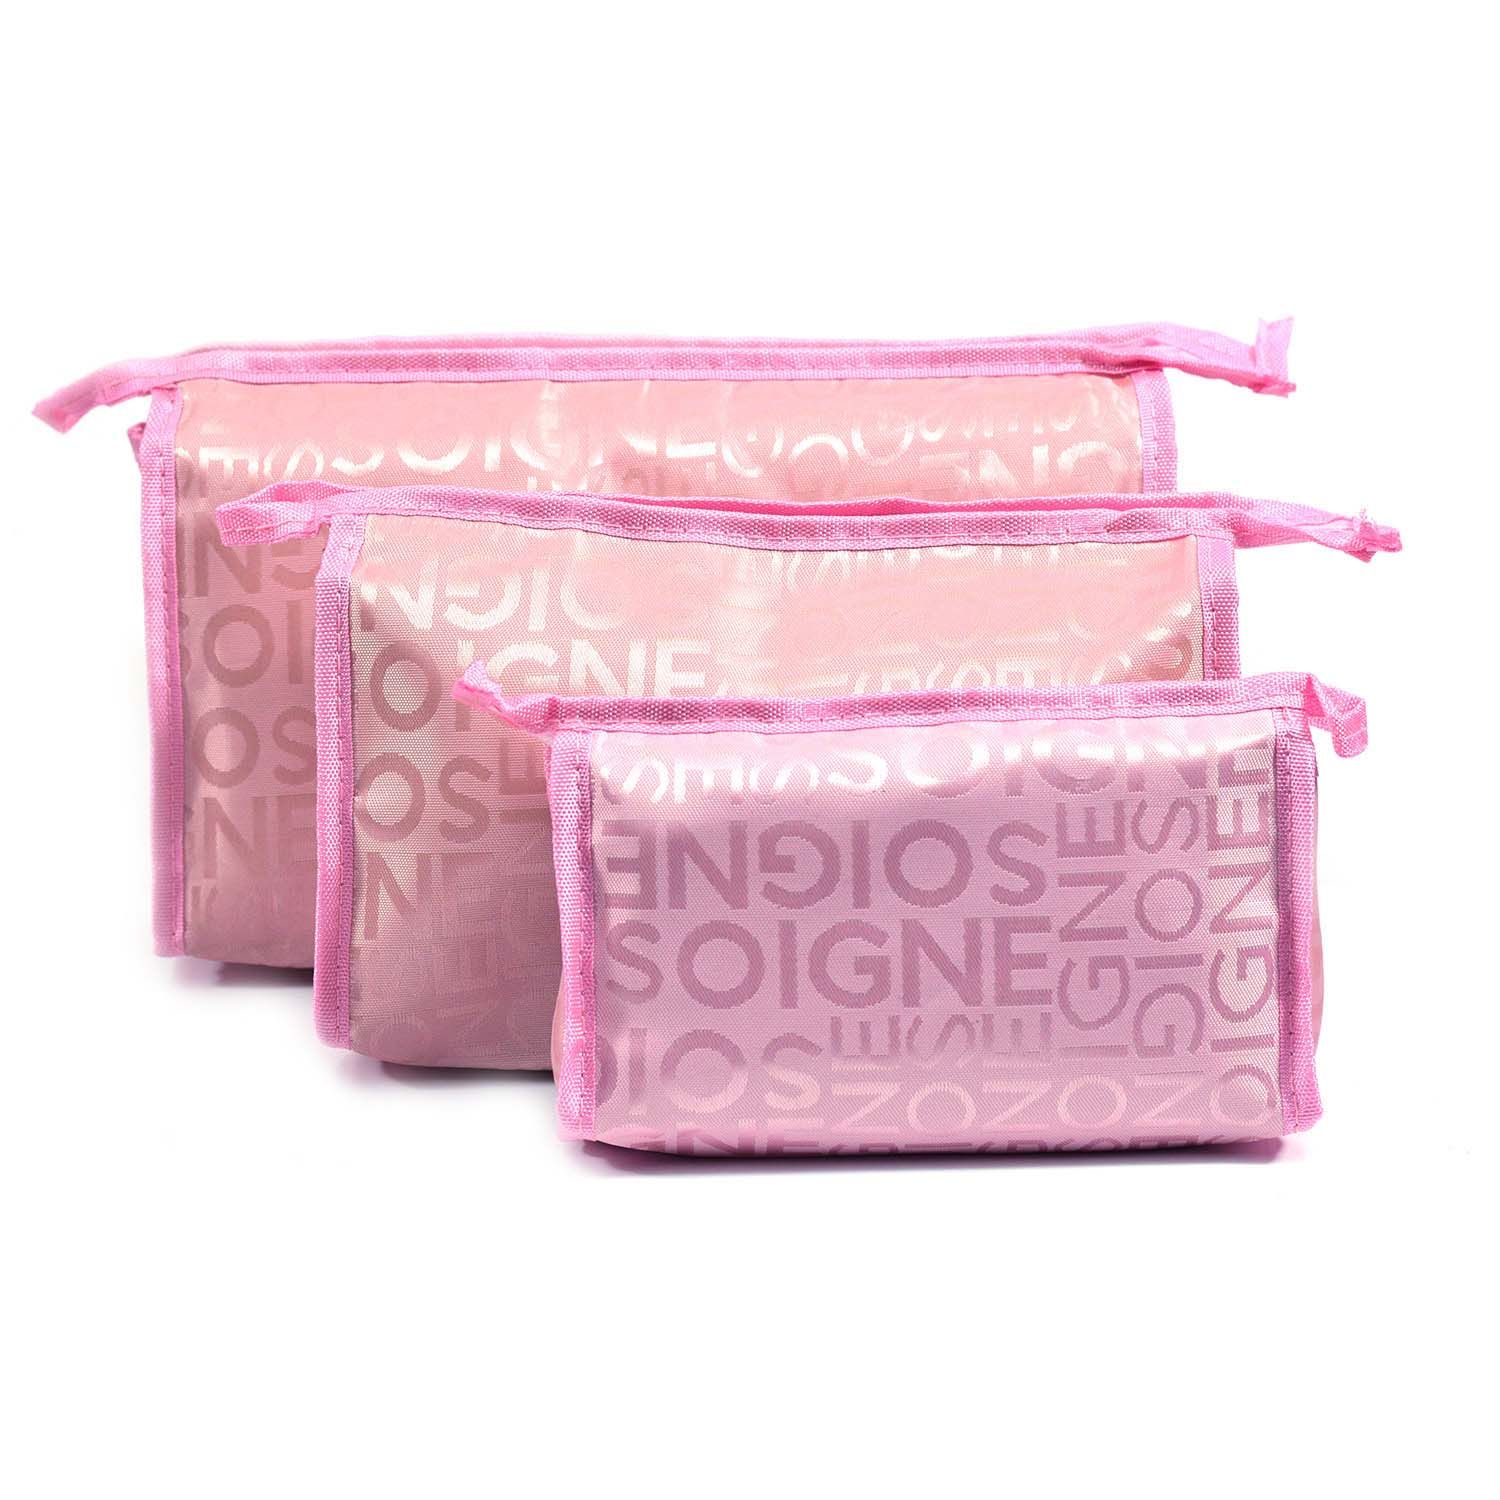 Buy Bonjour Paris Coat Me 3 pc Women's Multi Purpose Makeup Bag / Cosmetic Pouch Pink Sign - Purplle